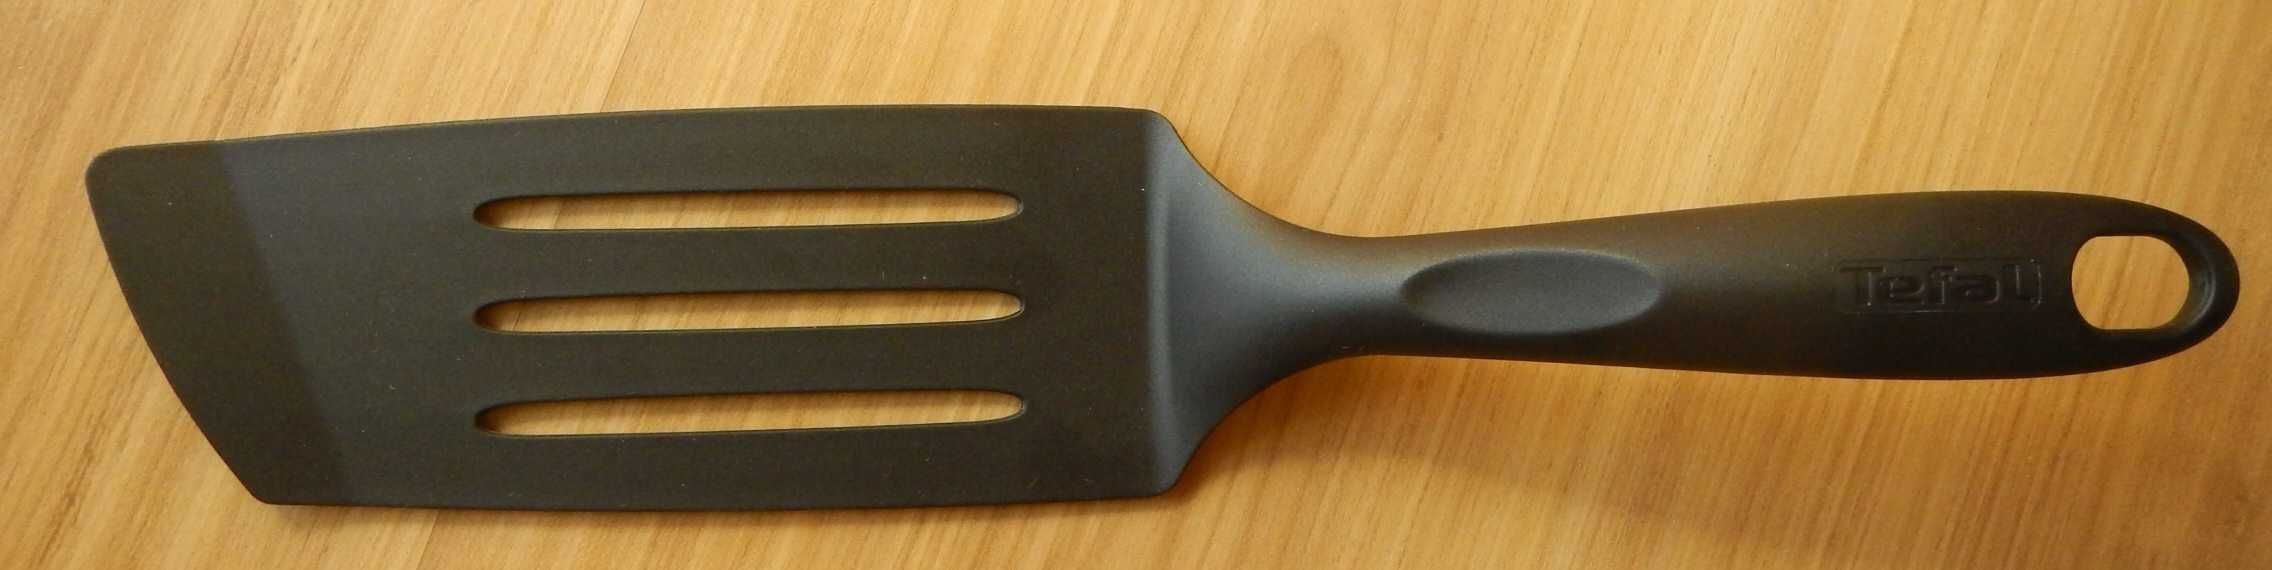 Sitko miska cukiernica noże ściereczki kuchnia